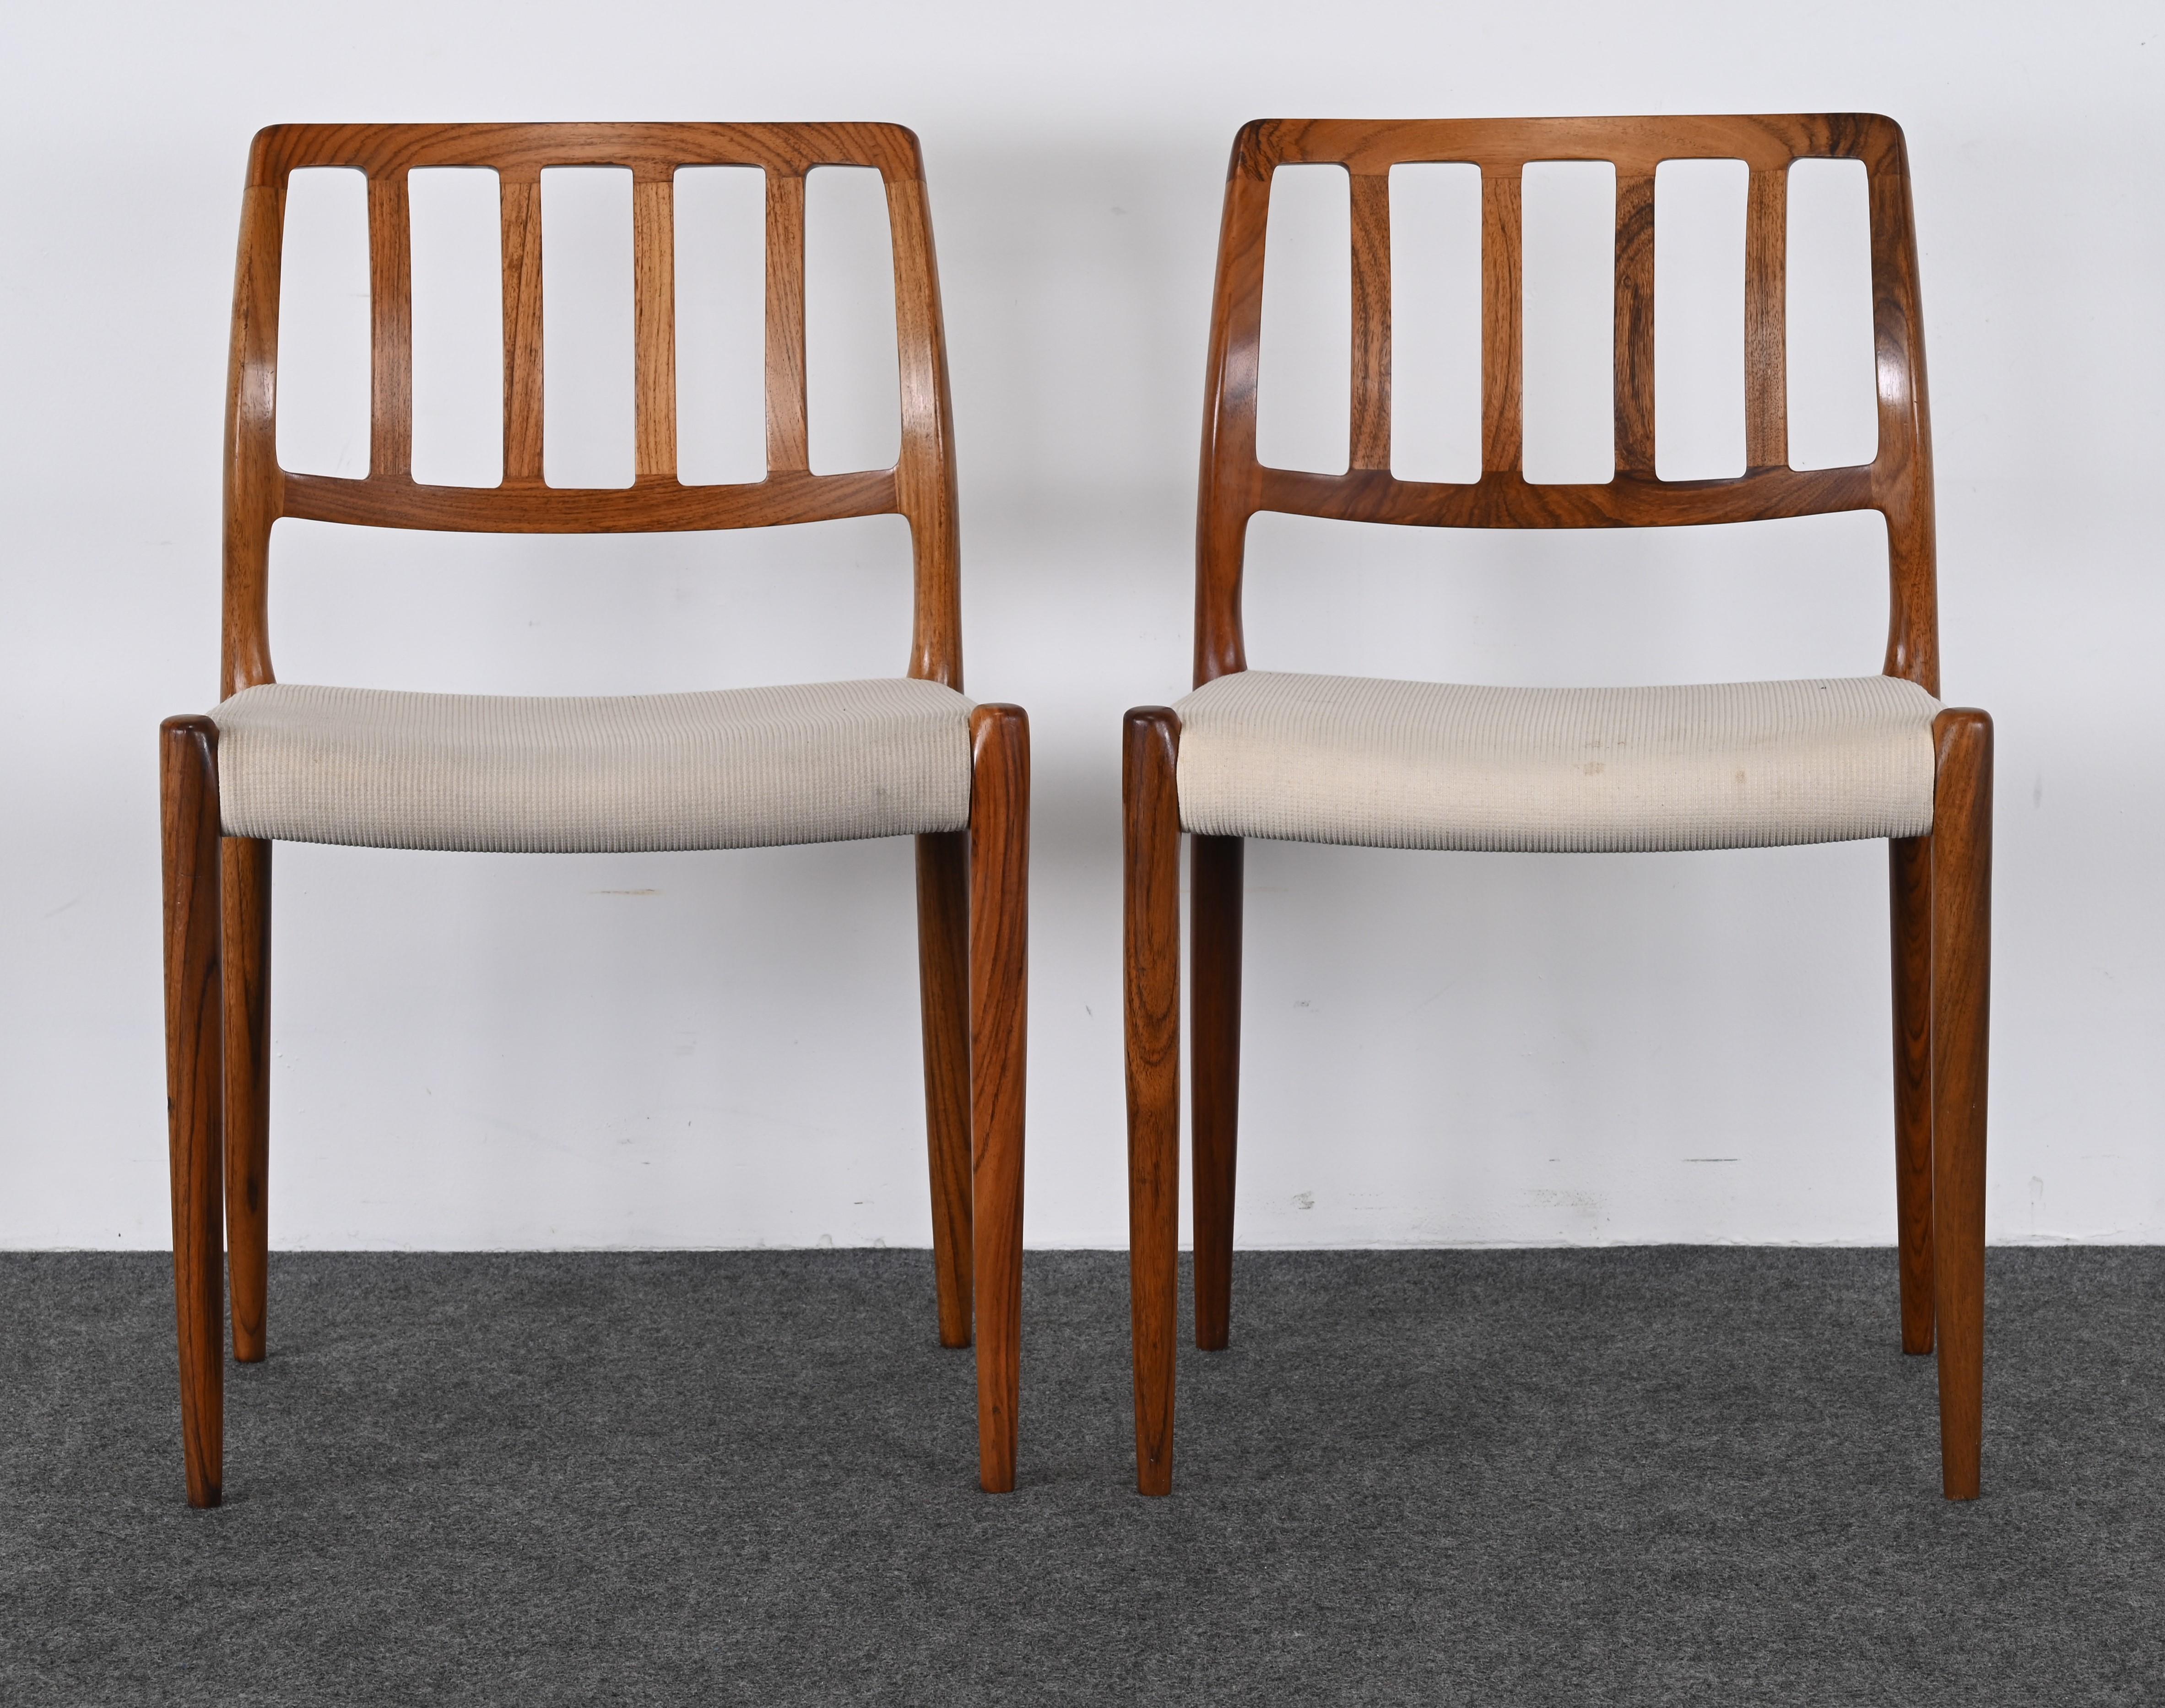 Voici une occasion d'acheter une paire de chaises de salle à manger modernes danoises en bois de rose, conçues par Niels Otto Moller et fabriquées par I.L.A. Modèle 83. Normalement, ces chaises sont vendues par lots, mais si vous avez besoin d'une